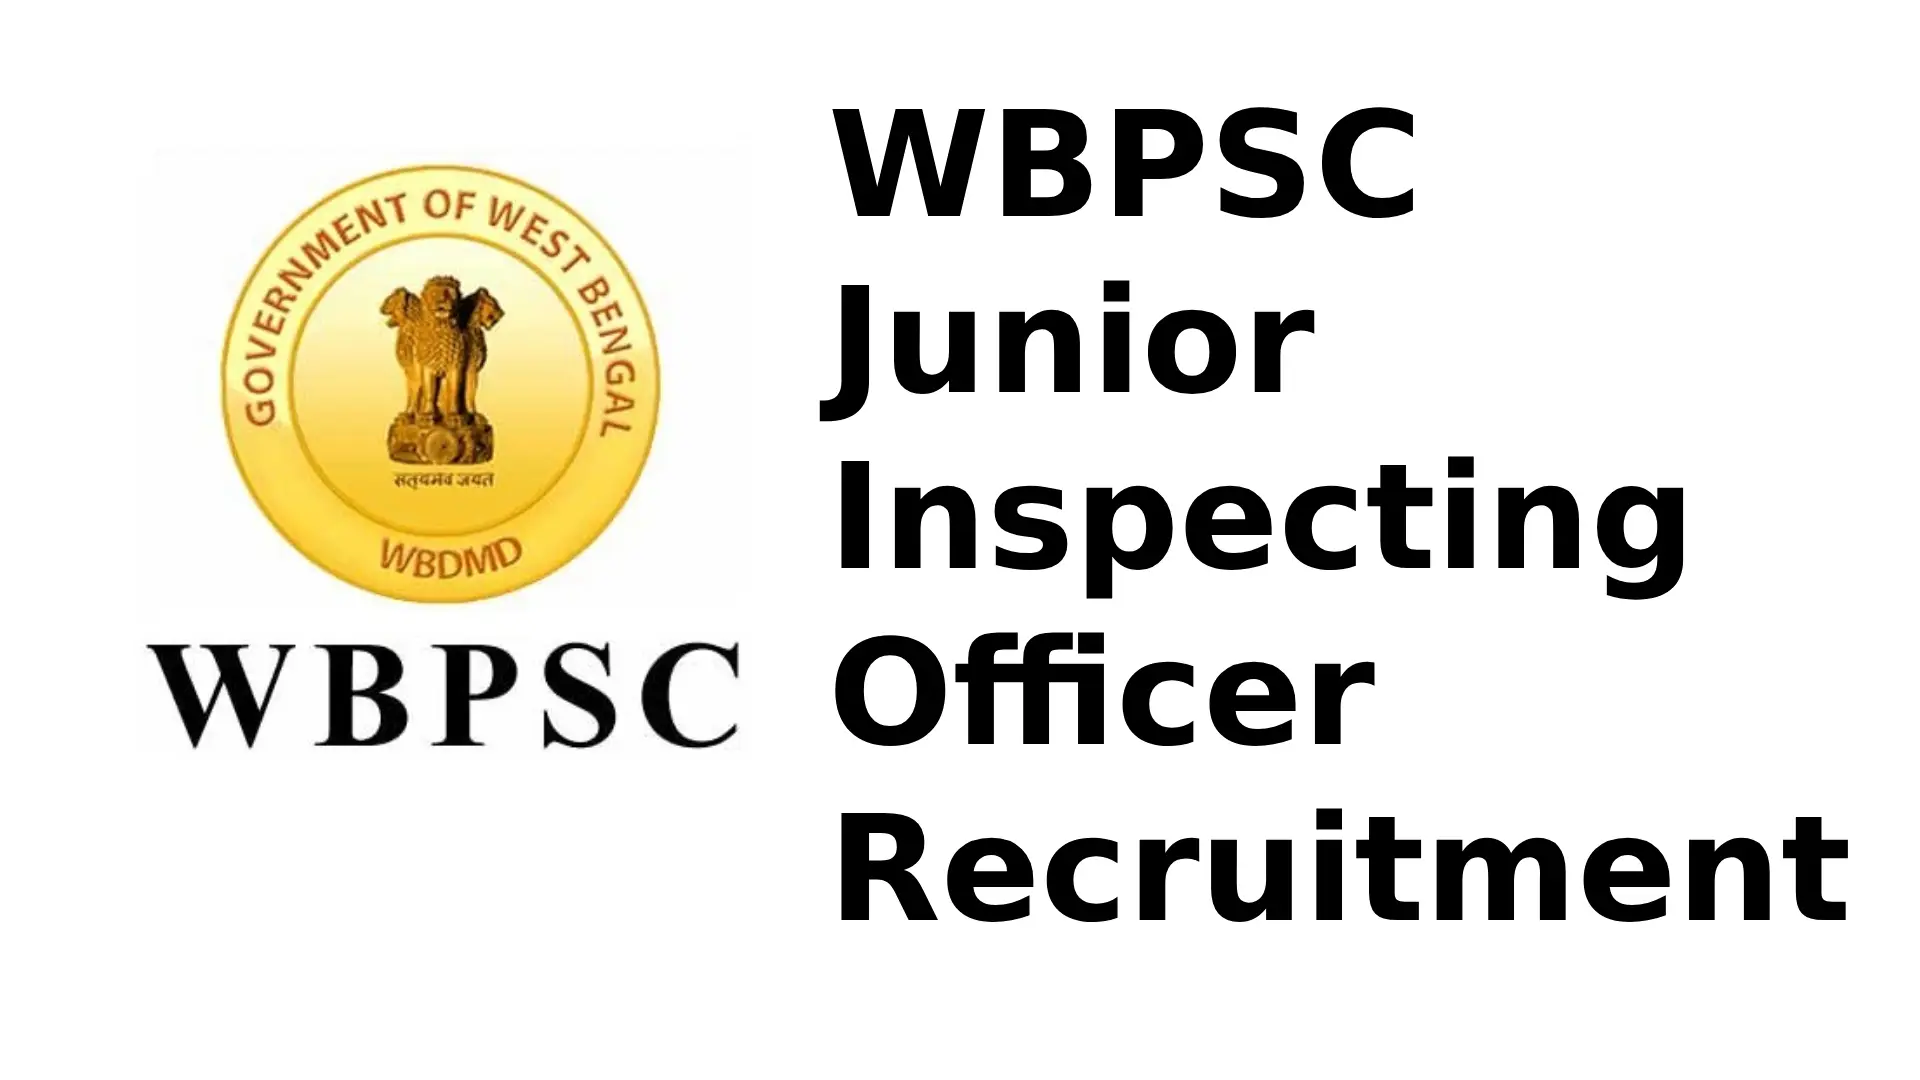 WBPSC Junior Inspecting Officer Recruitment